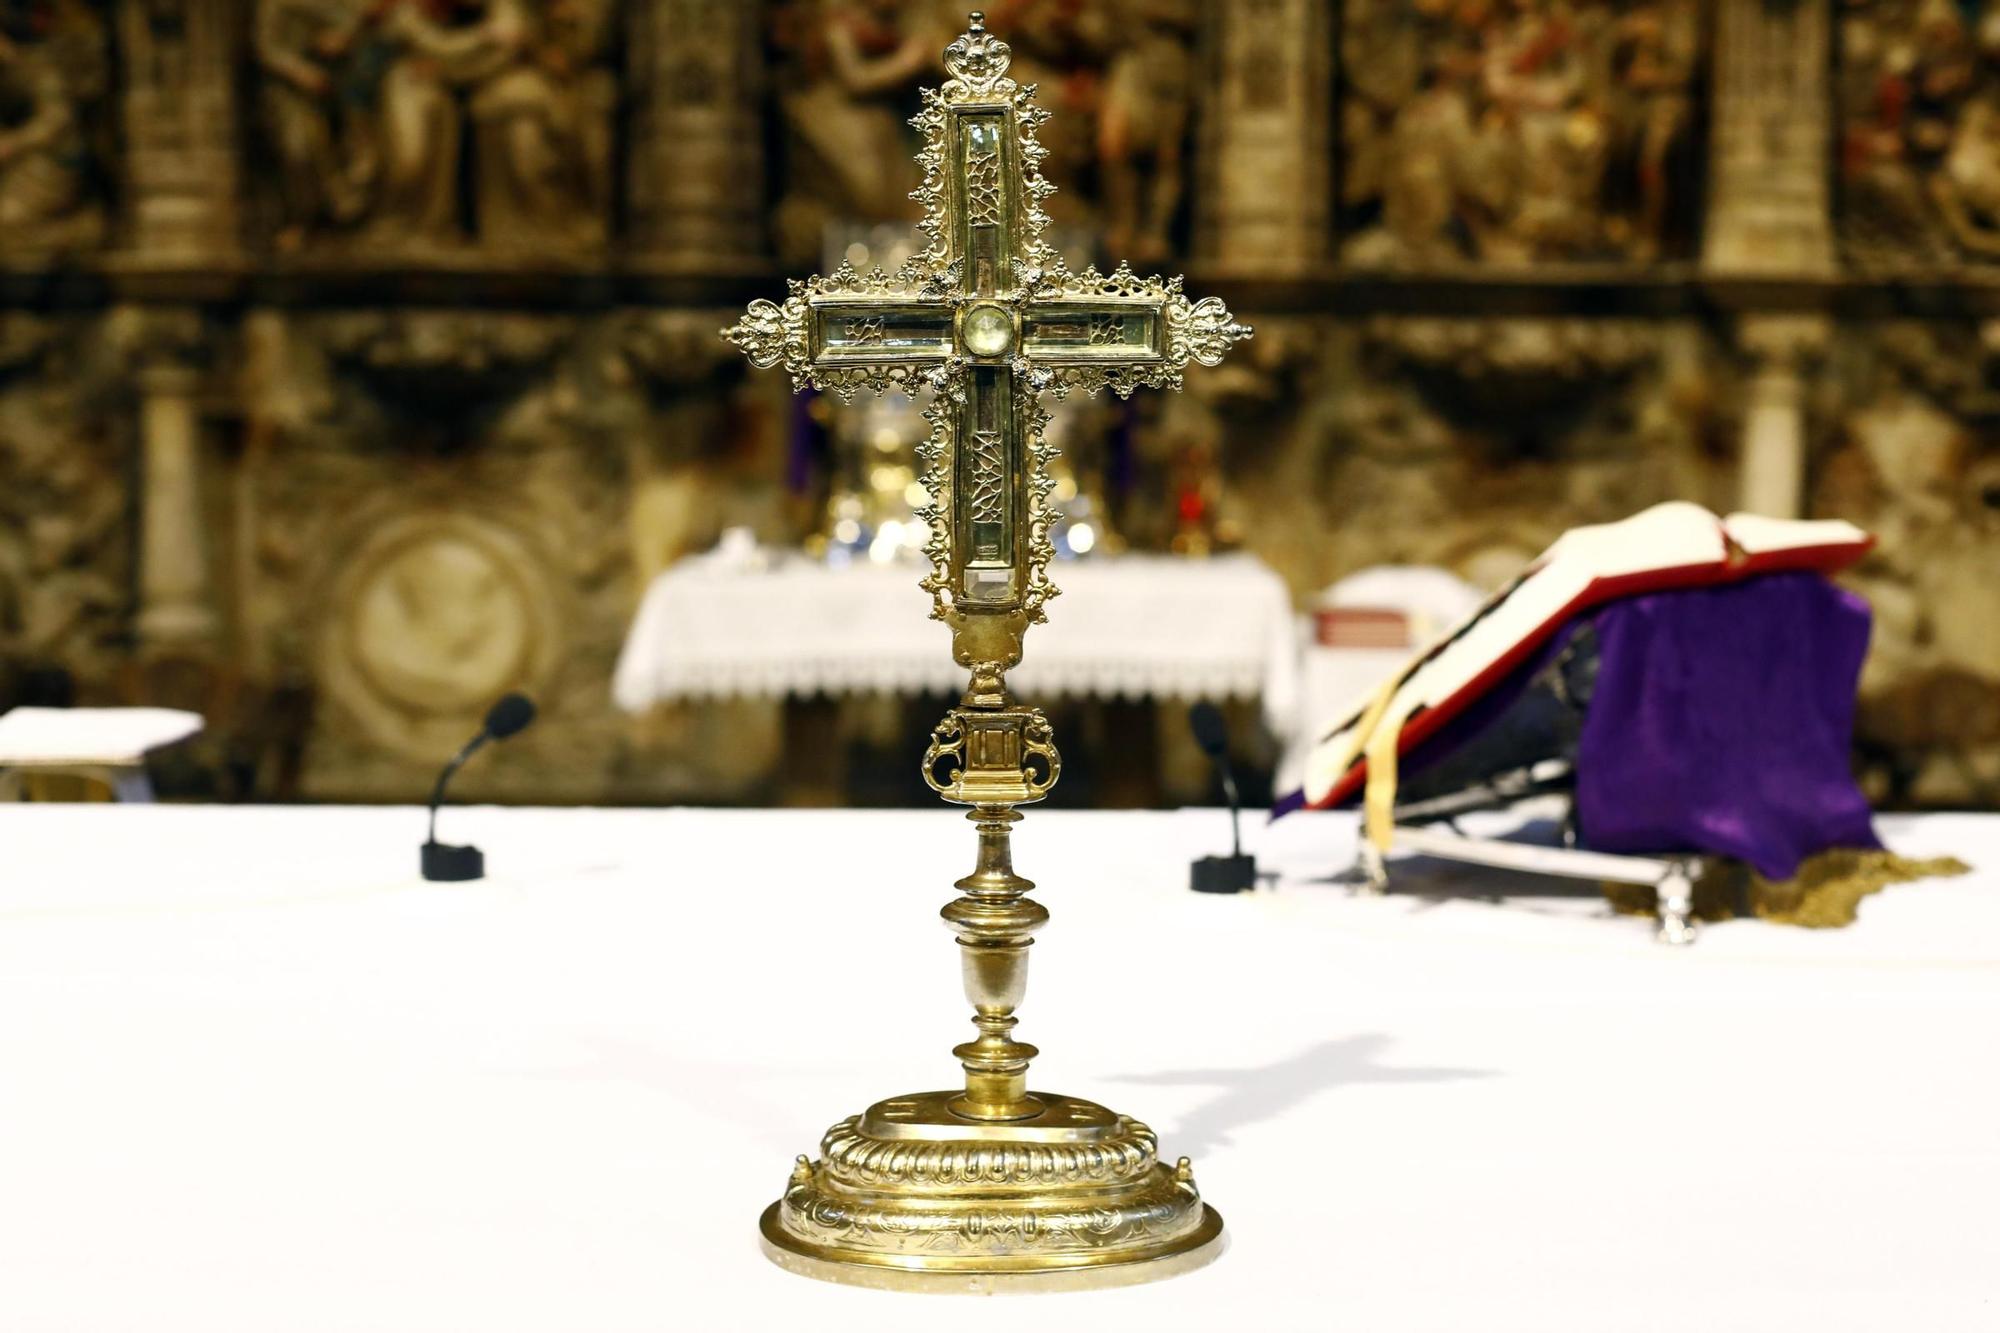 EN IMÁGENES | La Veracruz de Caspe, una de las grande reliquias de la cristiandad, puede venerarse en la basílica del Pilar